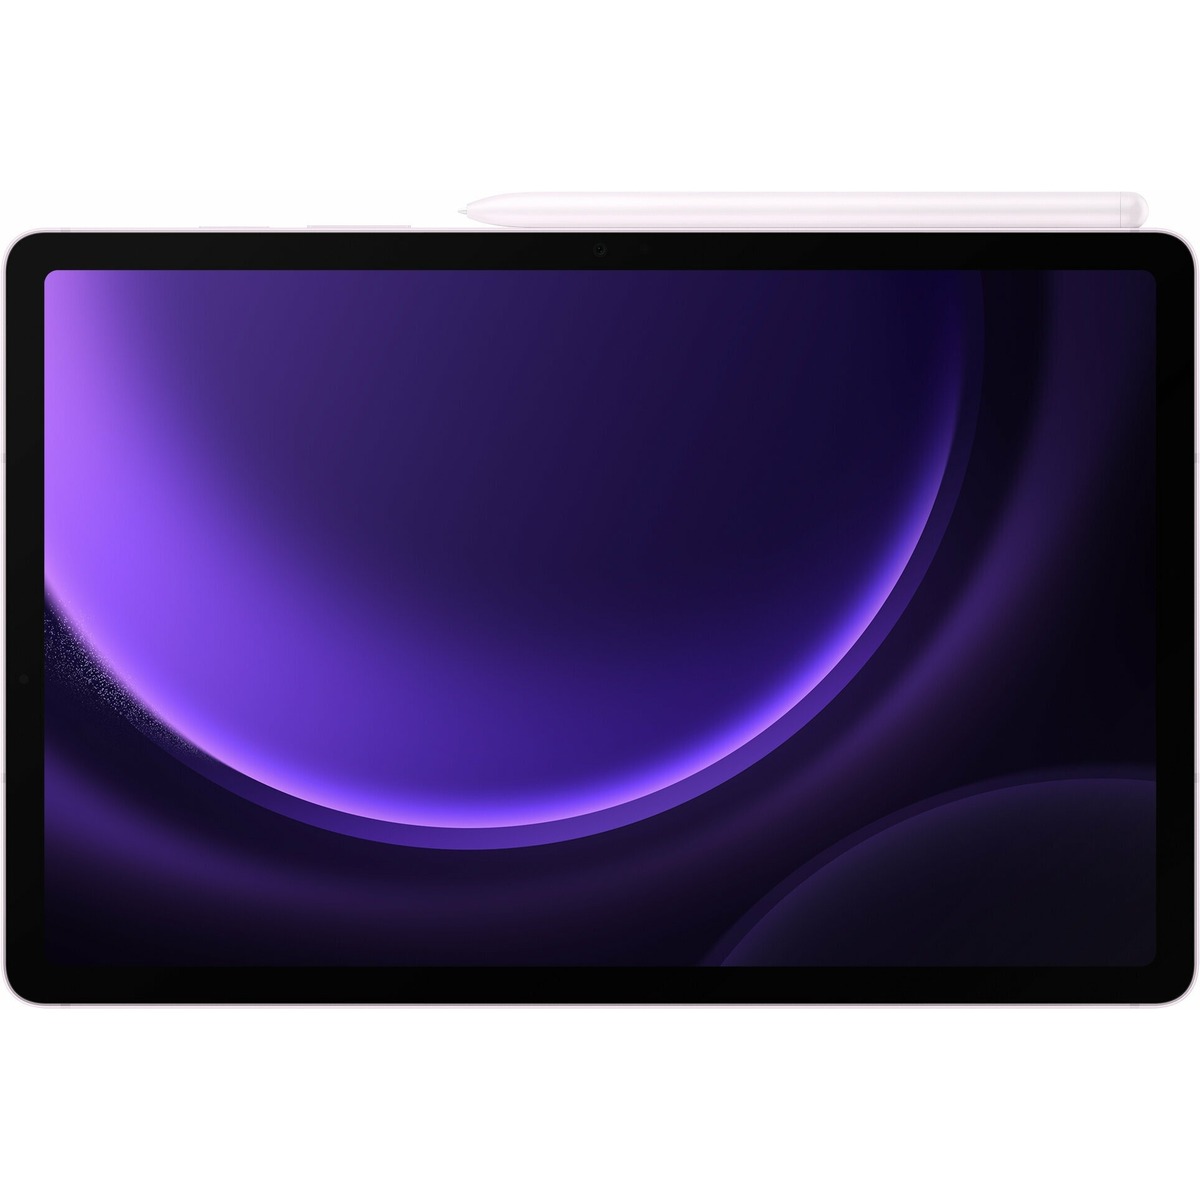 Планшет Samsung Galaxy Tab S9 FE Wi-Fi 6/128Gb X510NLIACAU RU (Цвет: Lavender)